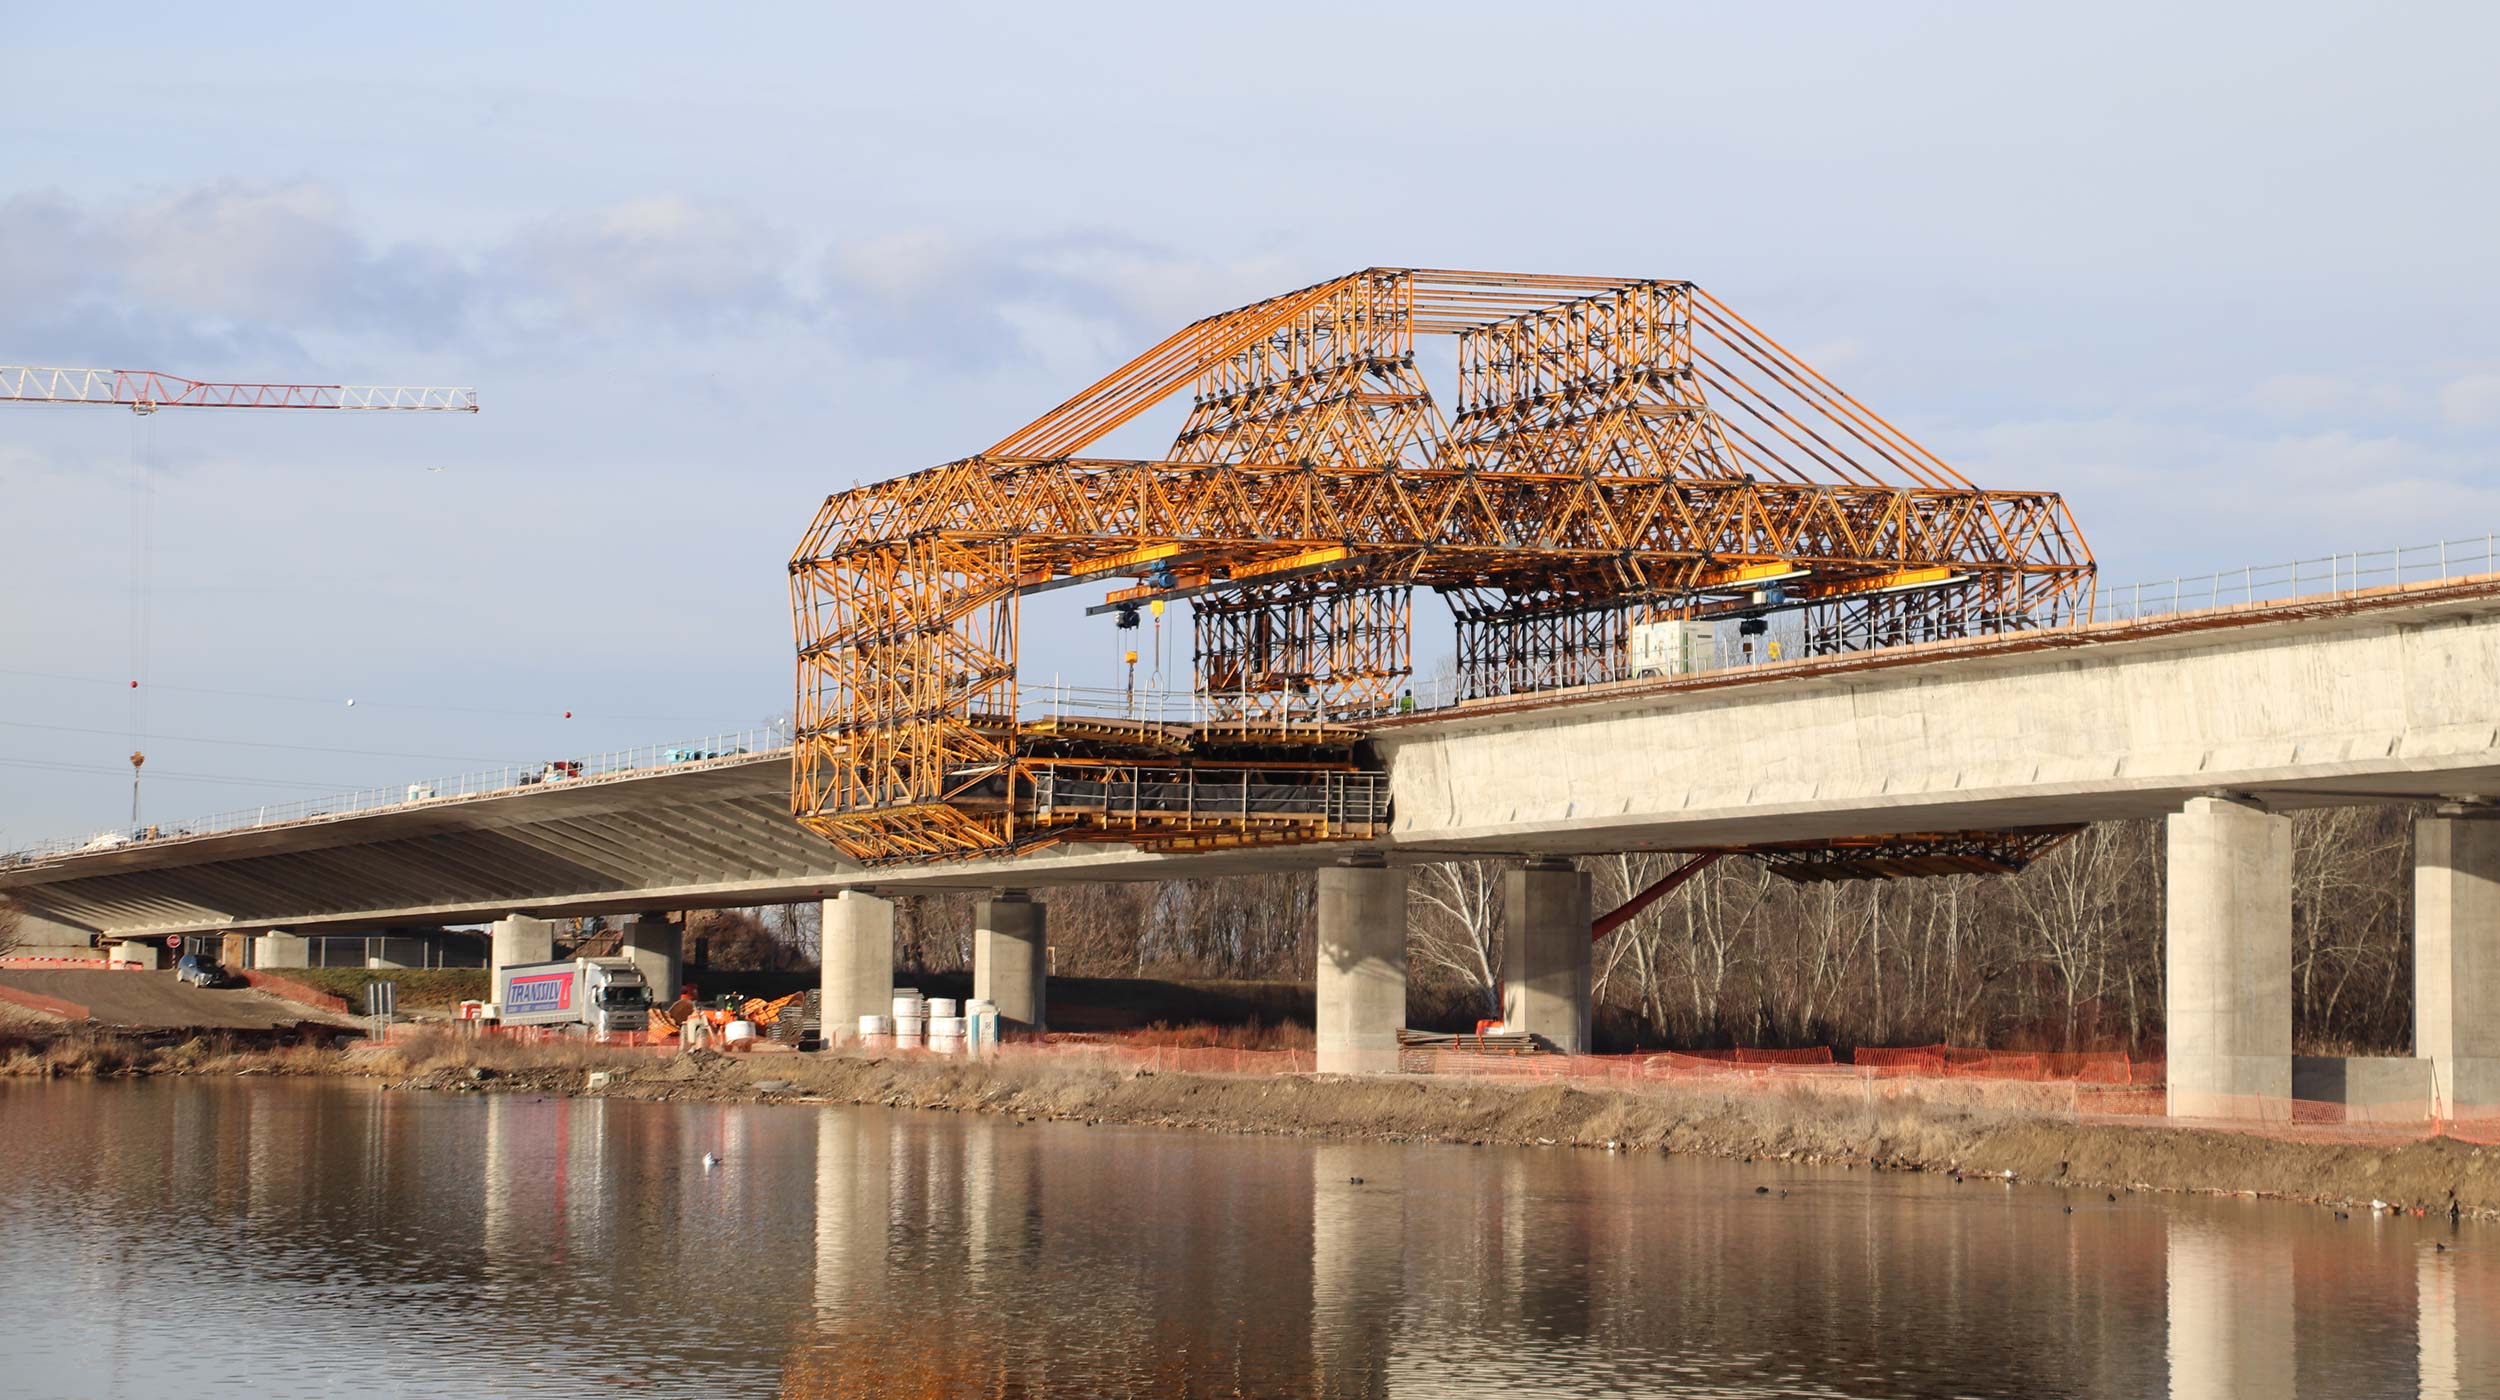 Das Projekt D4R7-Bratislava in der Slowakei umfasst mit 60 km Autobahnen 14 Autobahnkreuze mit mehr als 100 Brückenbauwerken. Die große Donaubrücke nimmt hiervon eine Fläche von mehr als 100.000 m² ein.